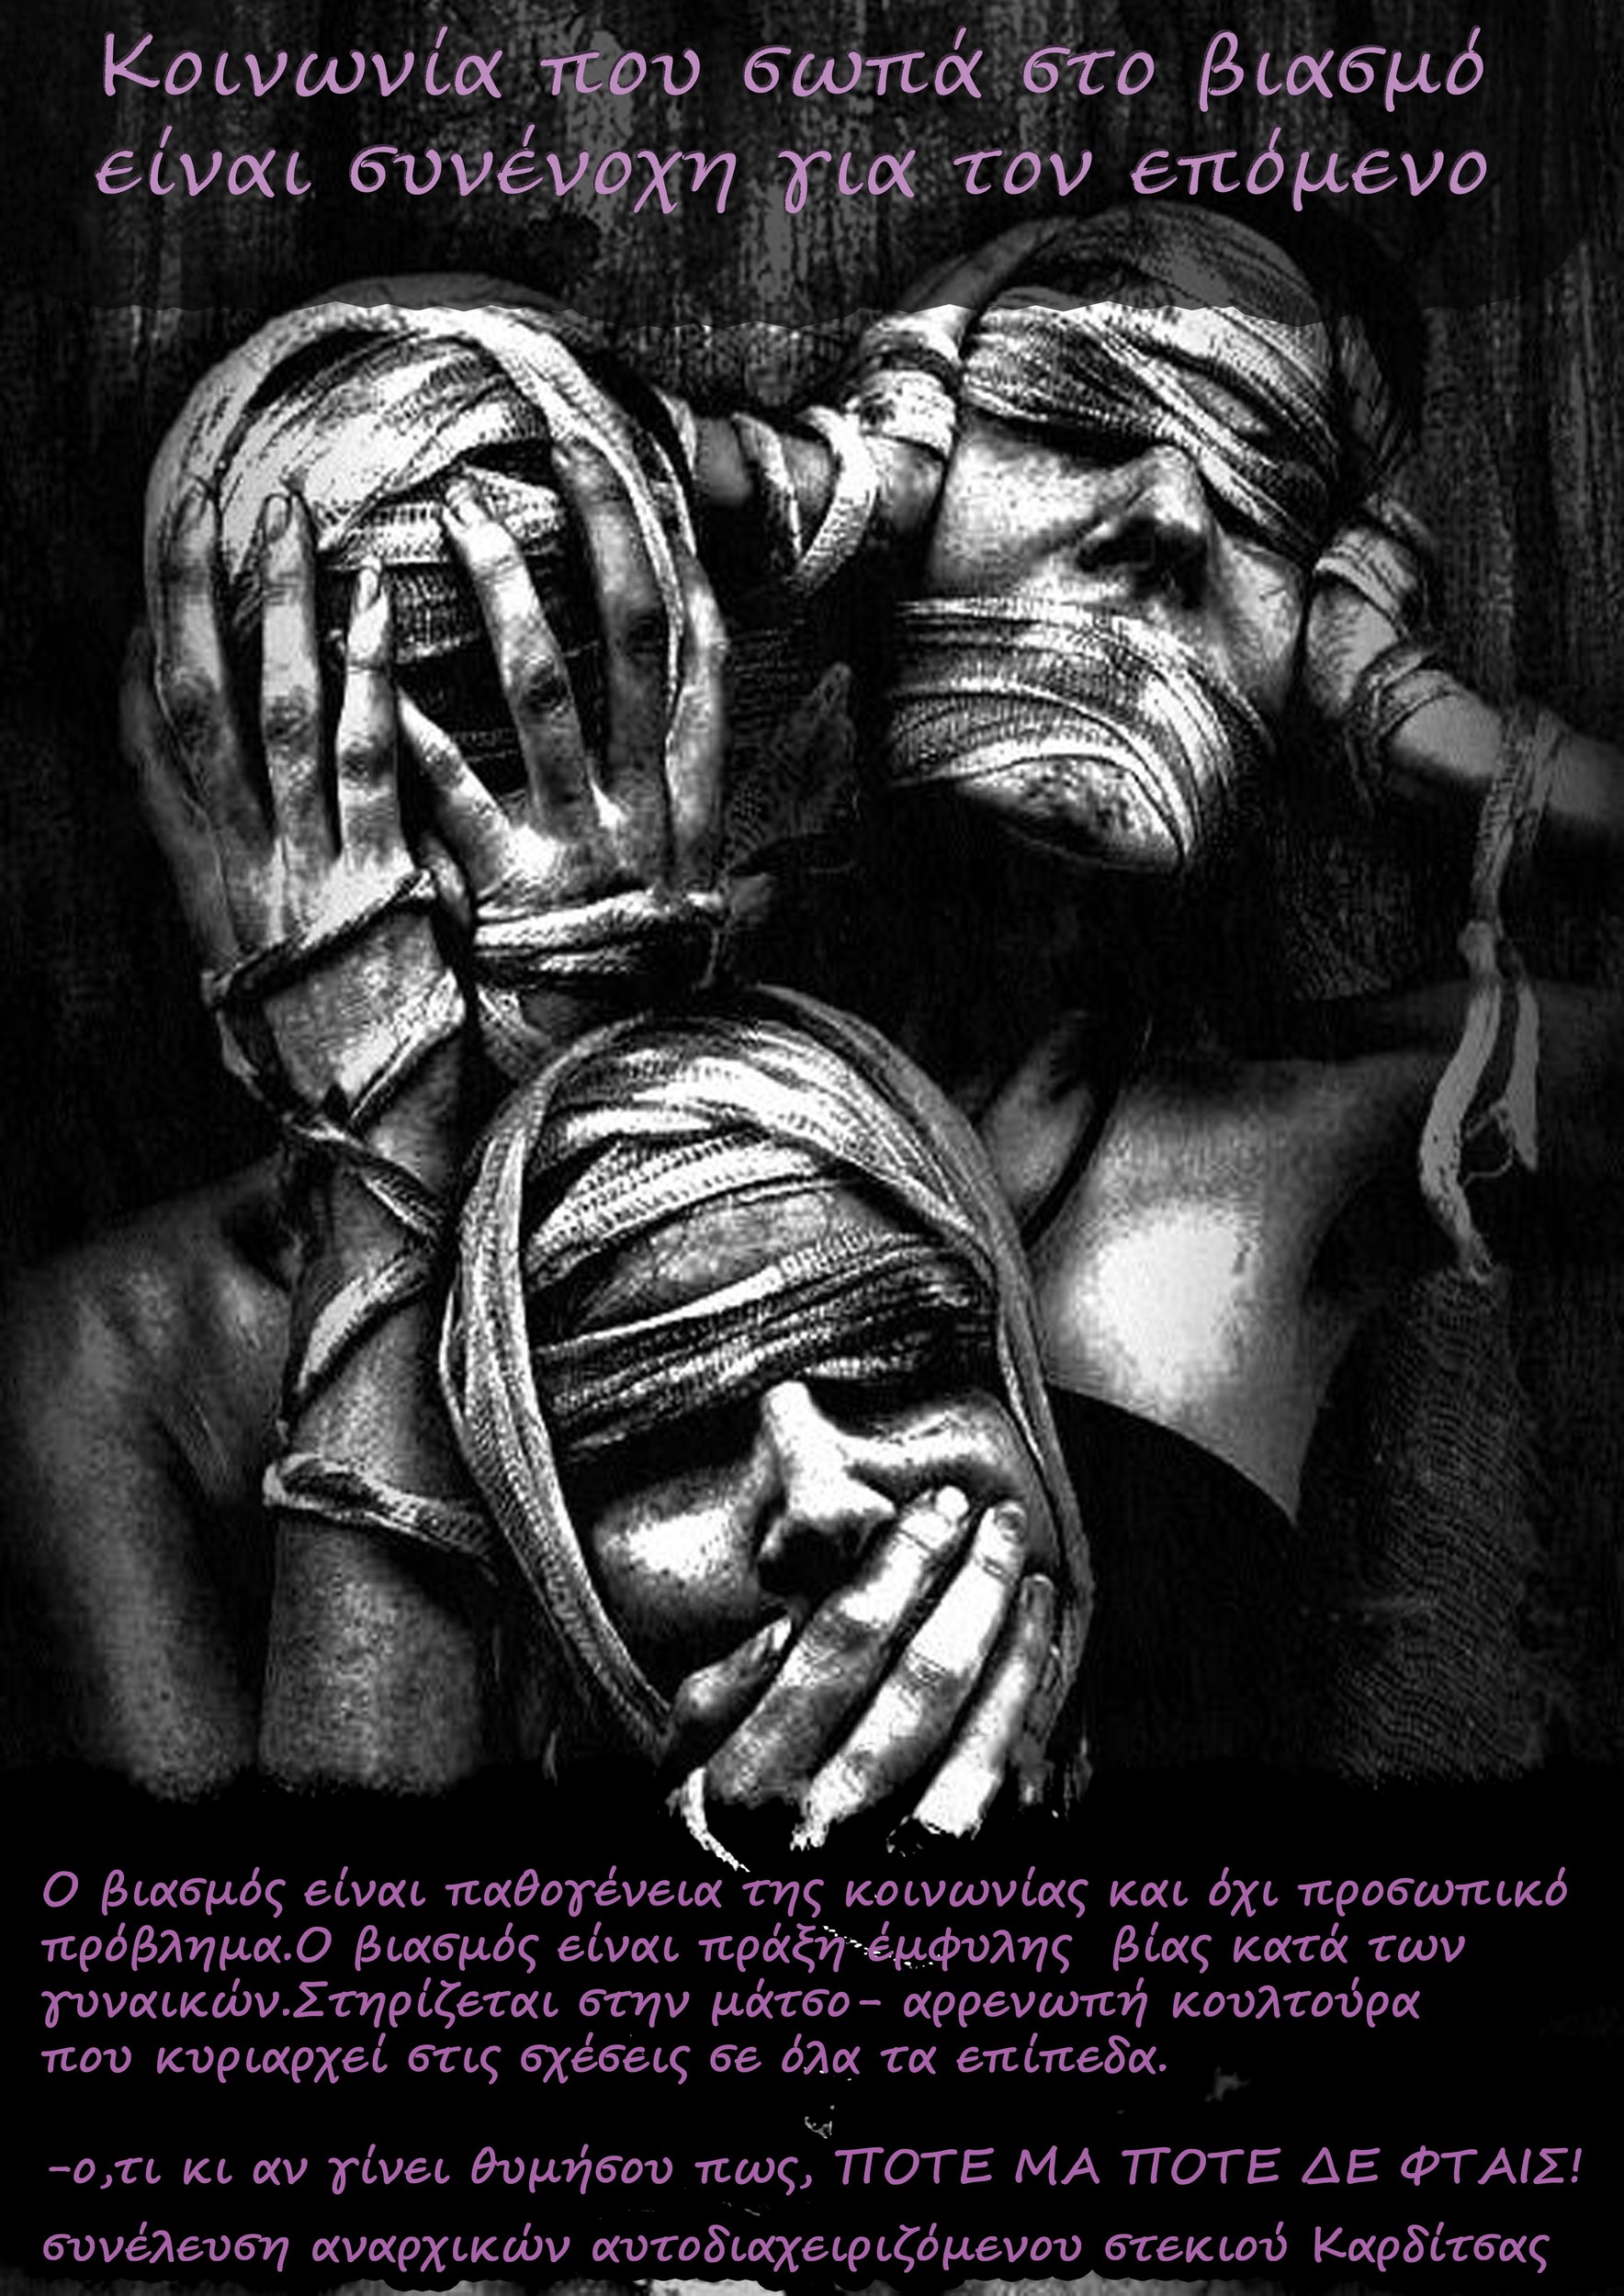 Καρδίτσα: Αφίσα ενάντια στη κουλτούρα του βιασμού